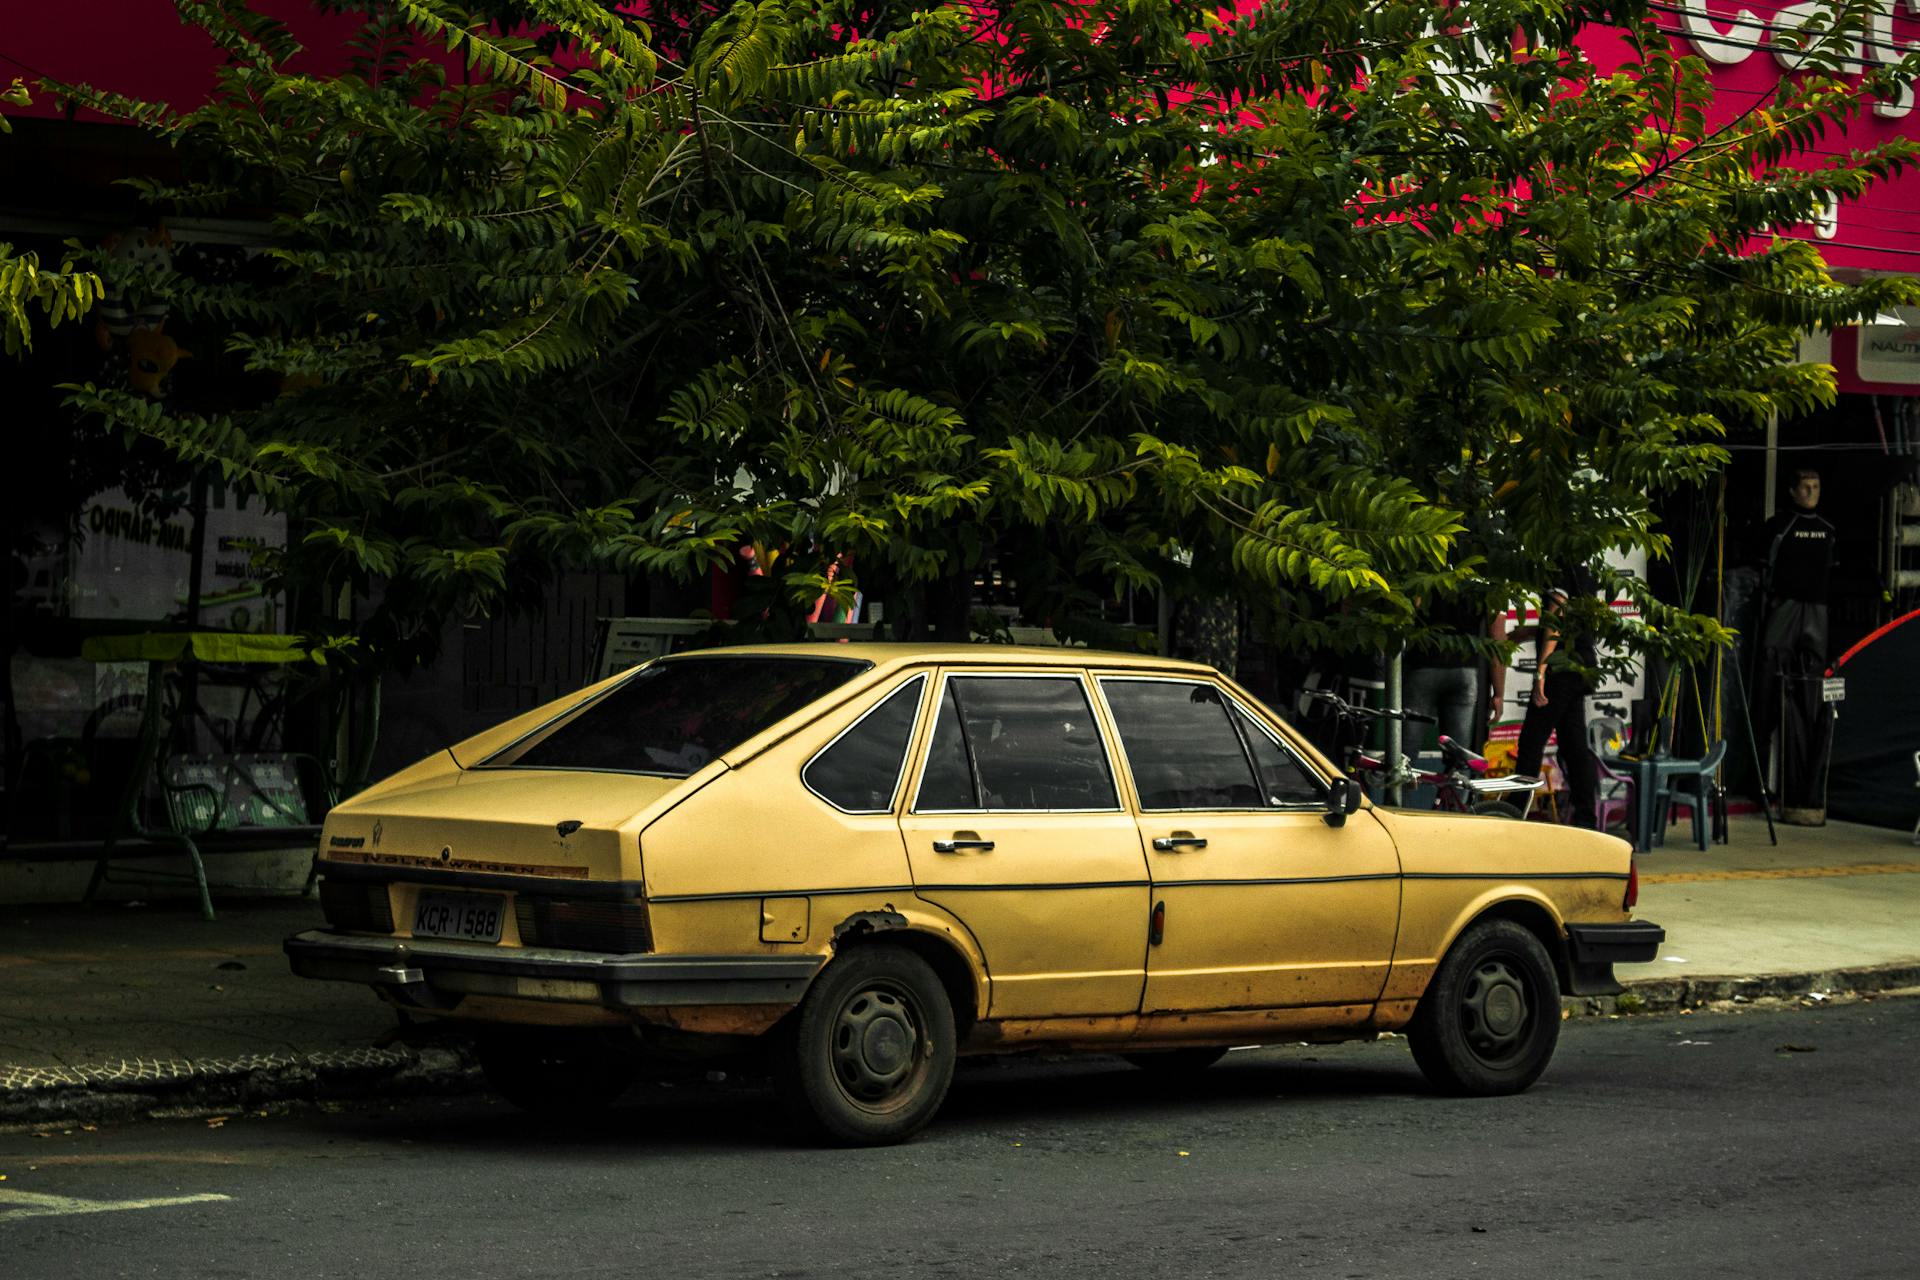 Un Sedán amarillo aparcado junto a la carretera | Fuente: Pexels